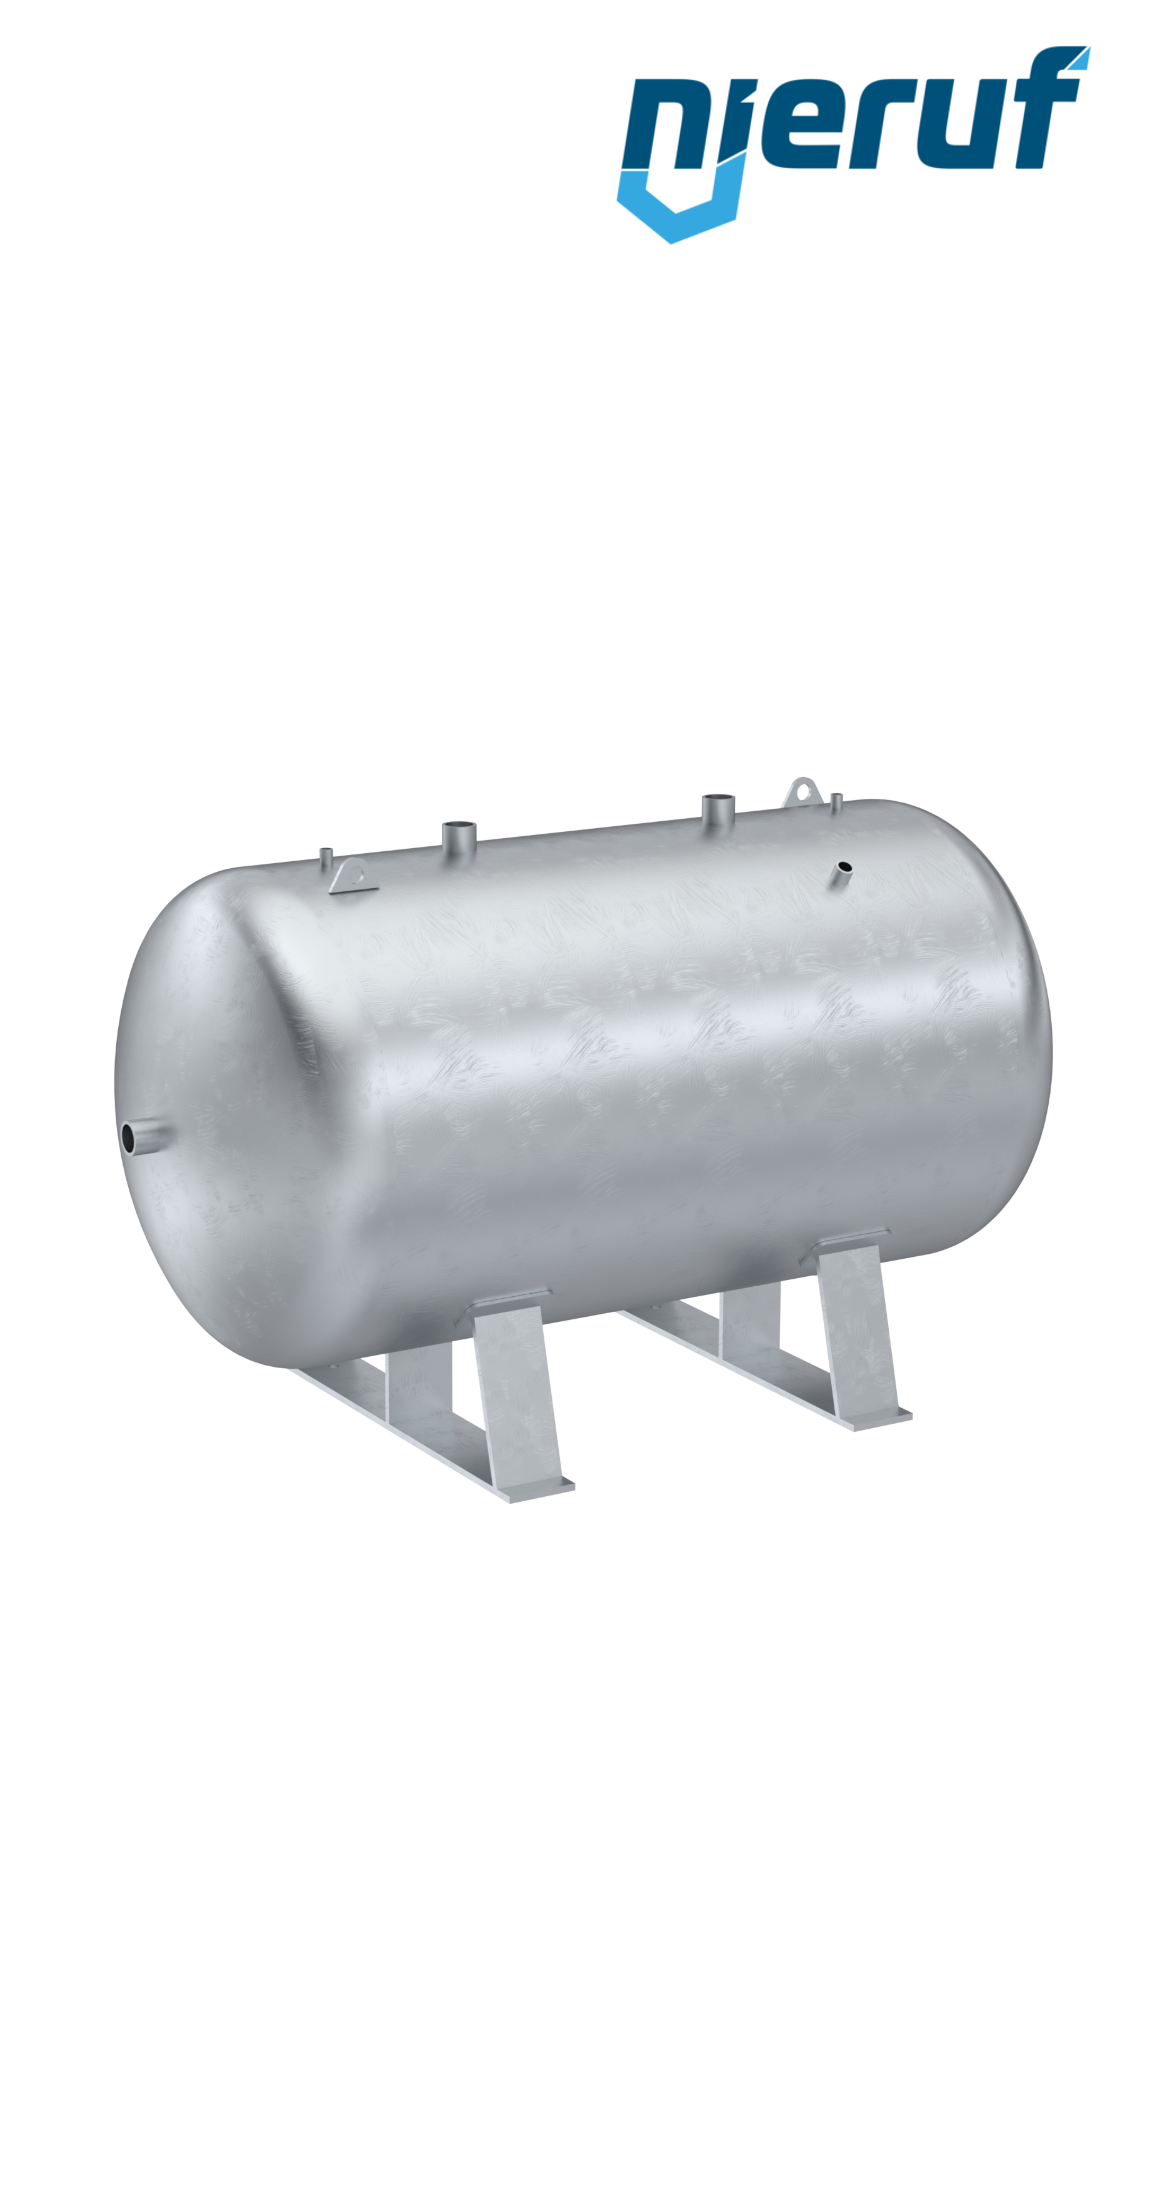 Serbatoio a pressione orizzontale BE01 10000 litri, 0-11 bar, acciaio zincato, diametro 2000 mm